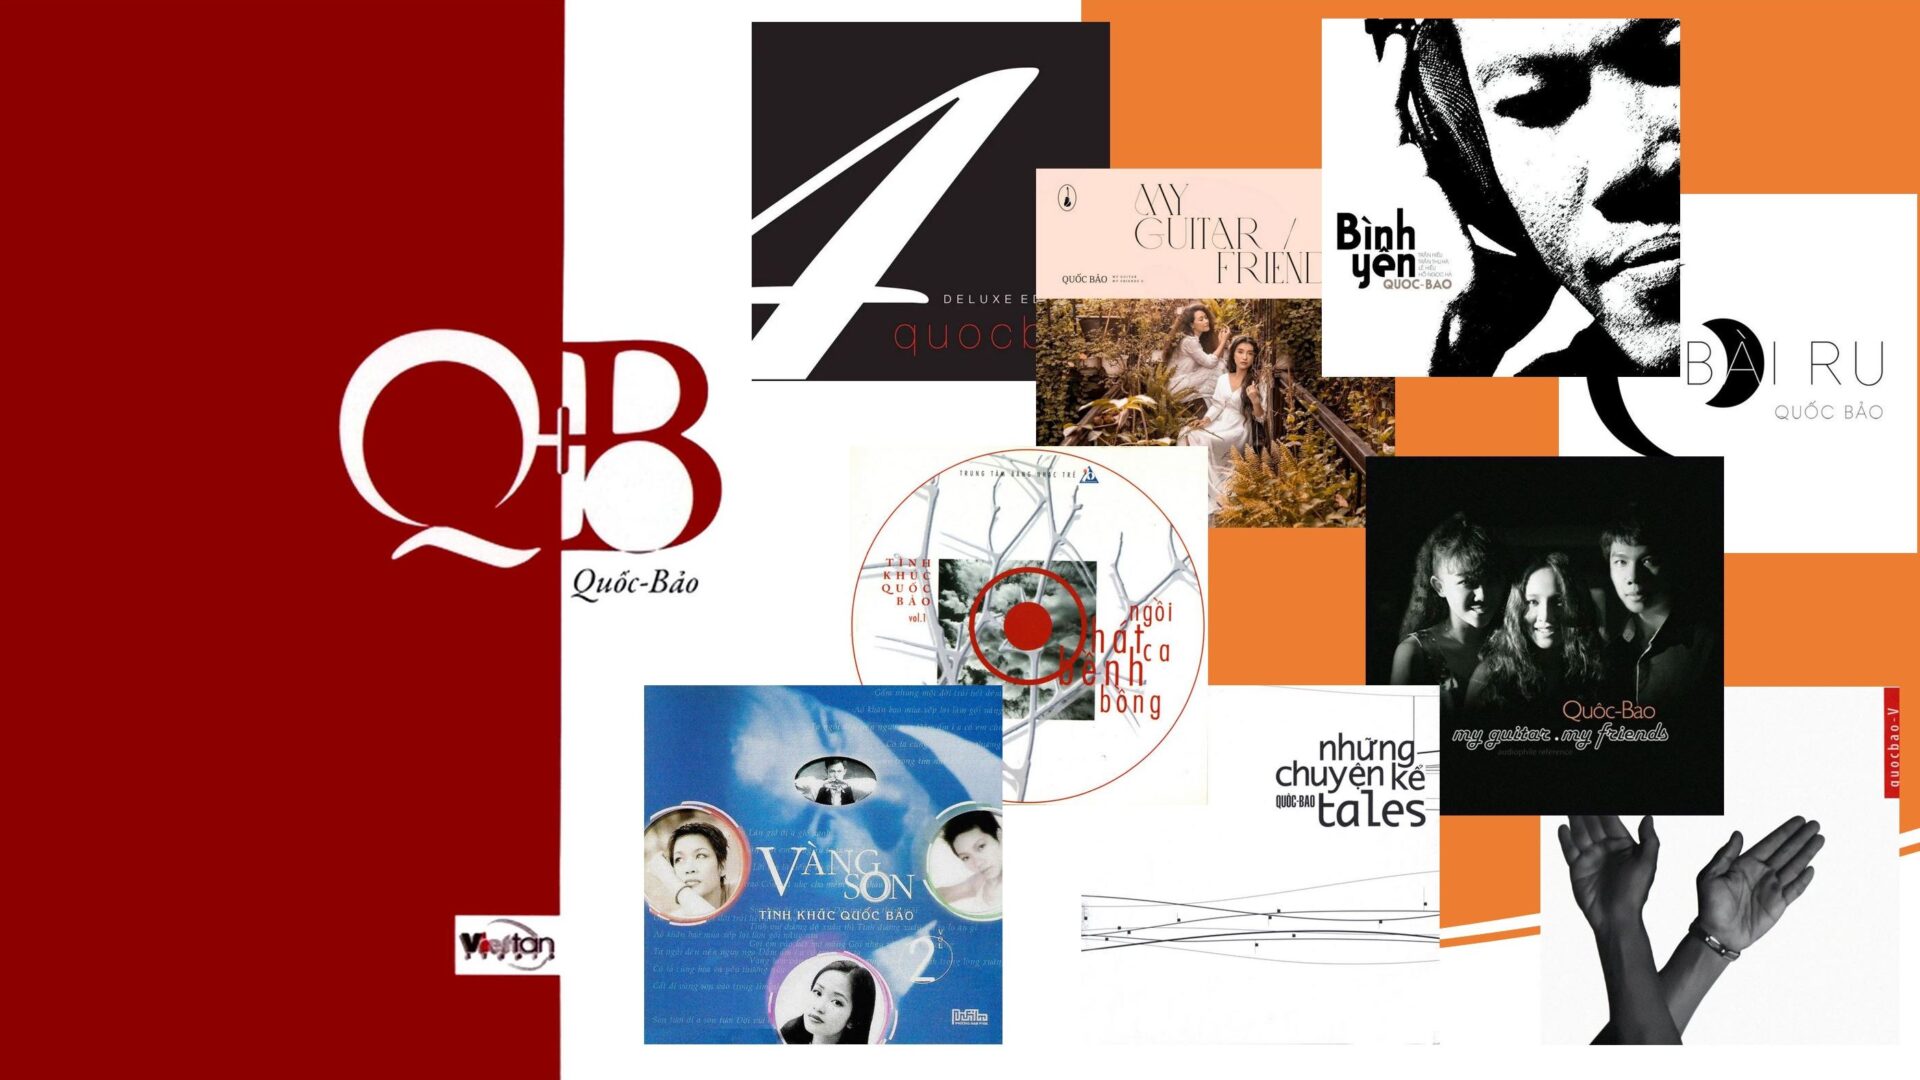 Bài tổng hợp 10 album của Quốc Bảo trong 30 năm làm nghề.